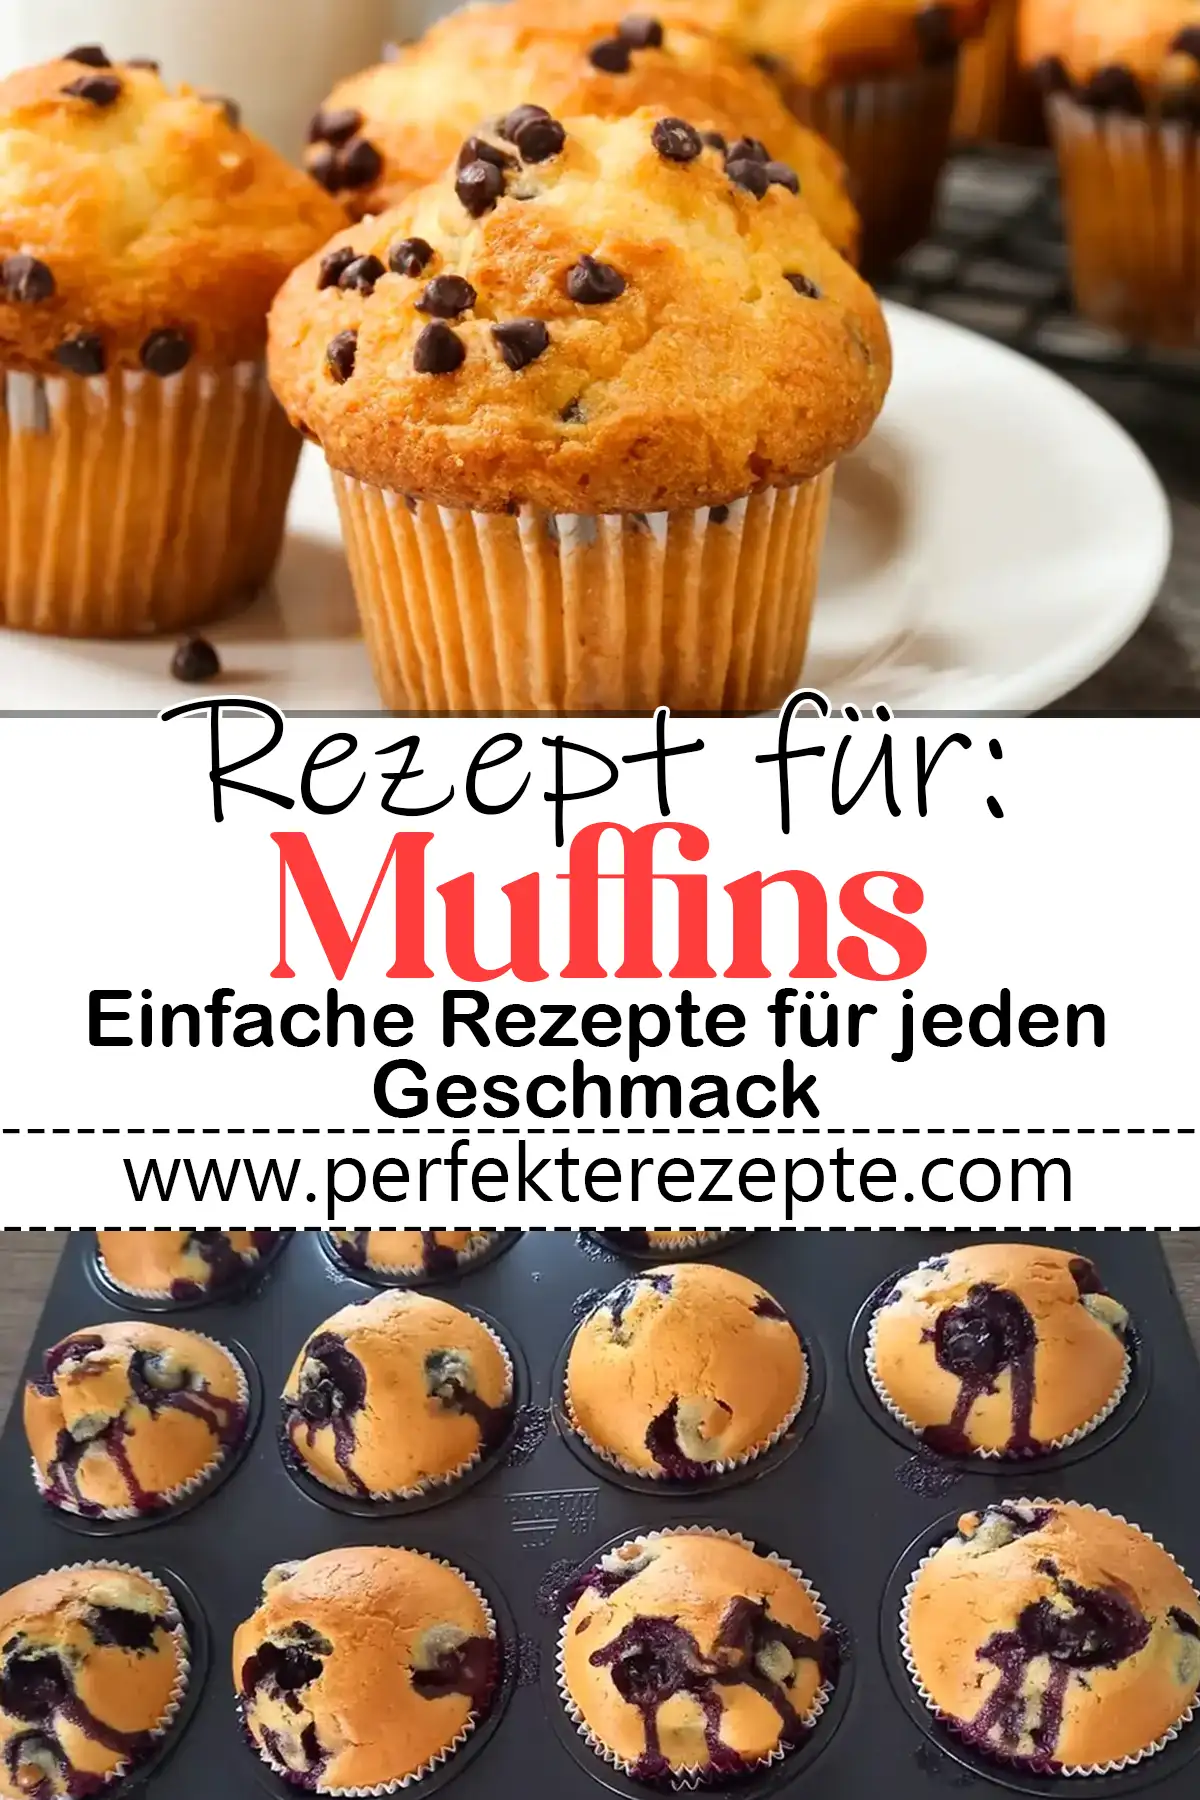 Perfekte Muffins Rezept